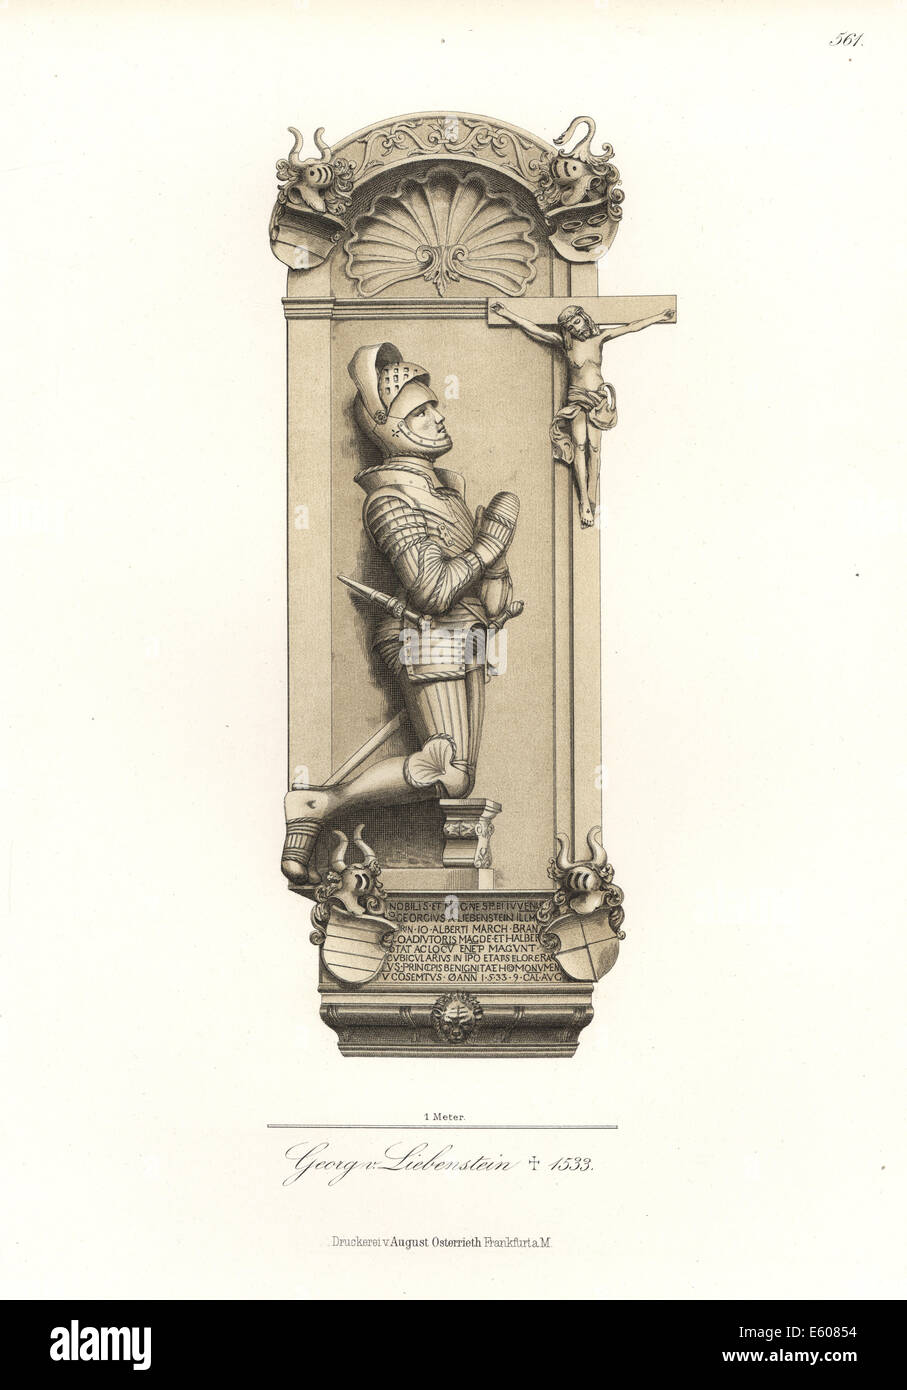 George von Liebenstein, German knight, died 1533. Stock Photo